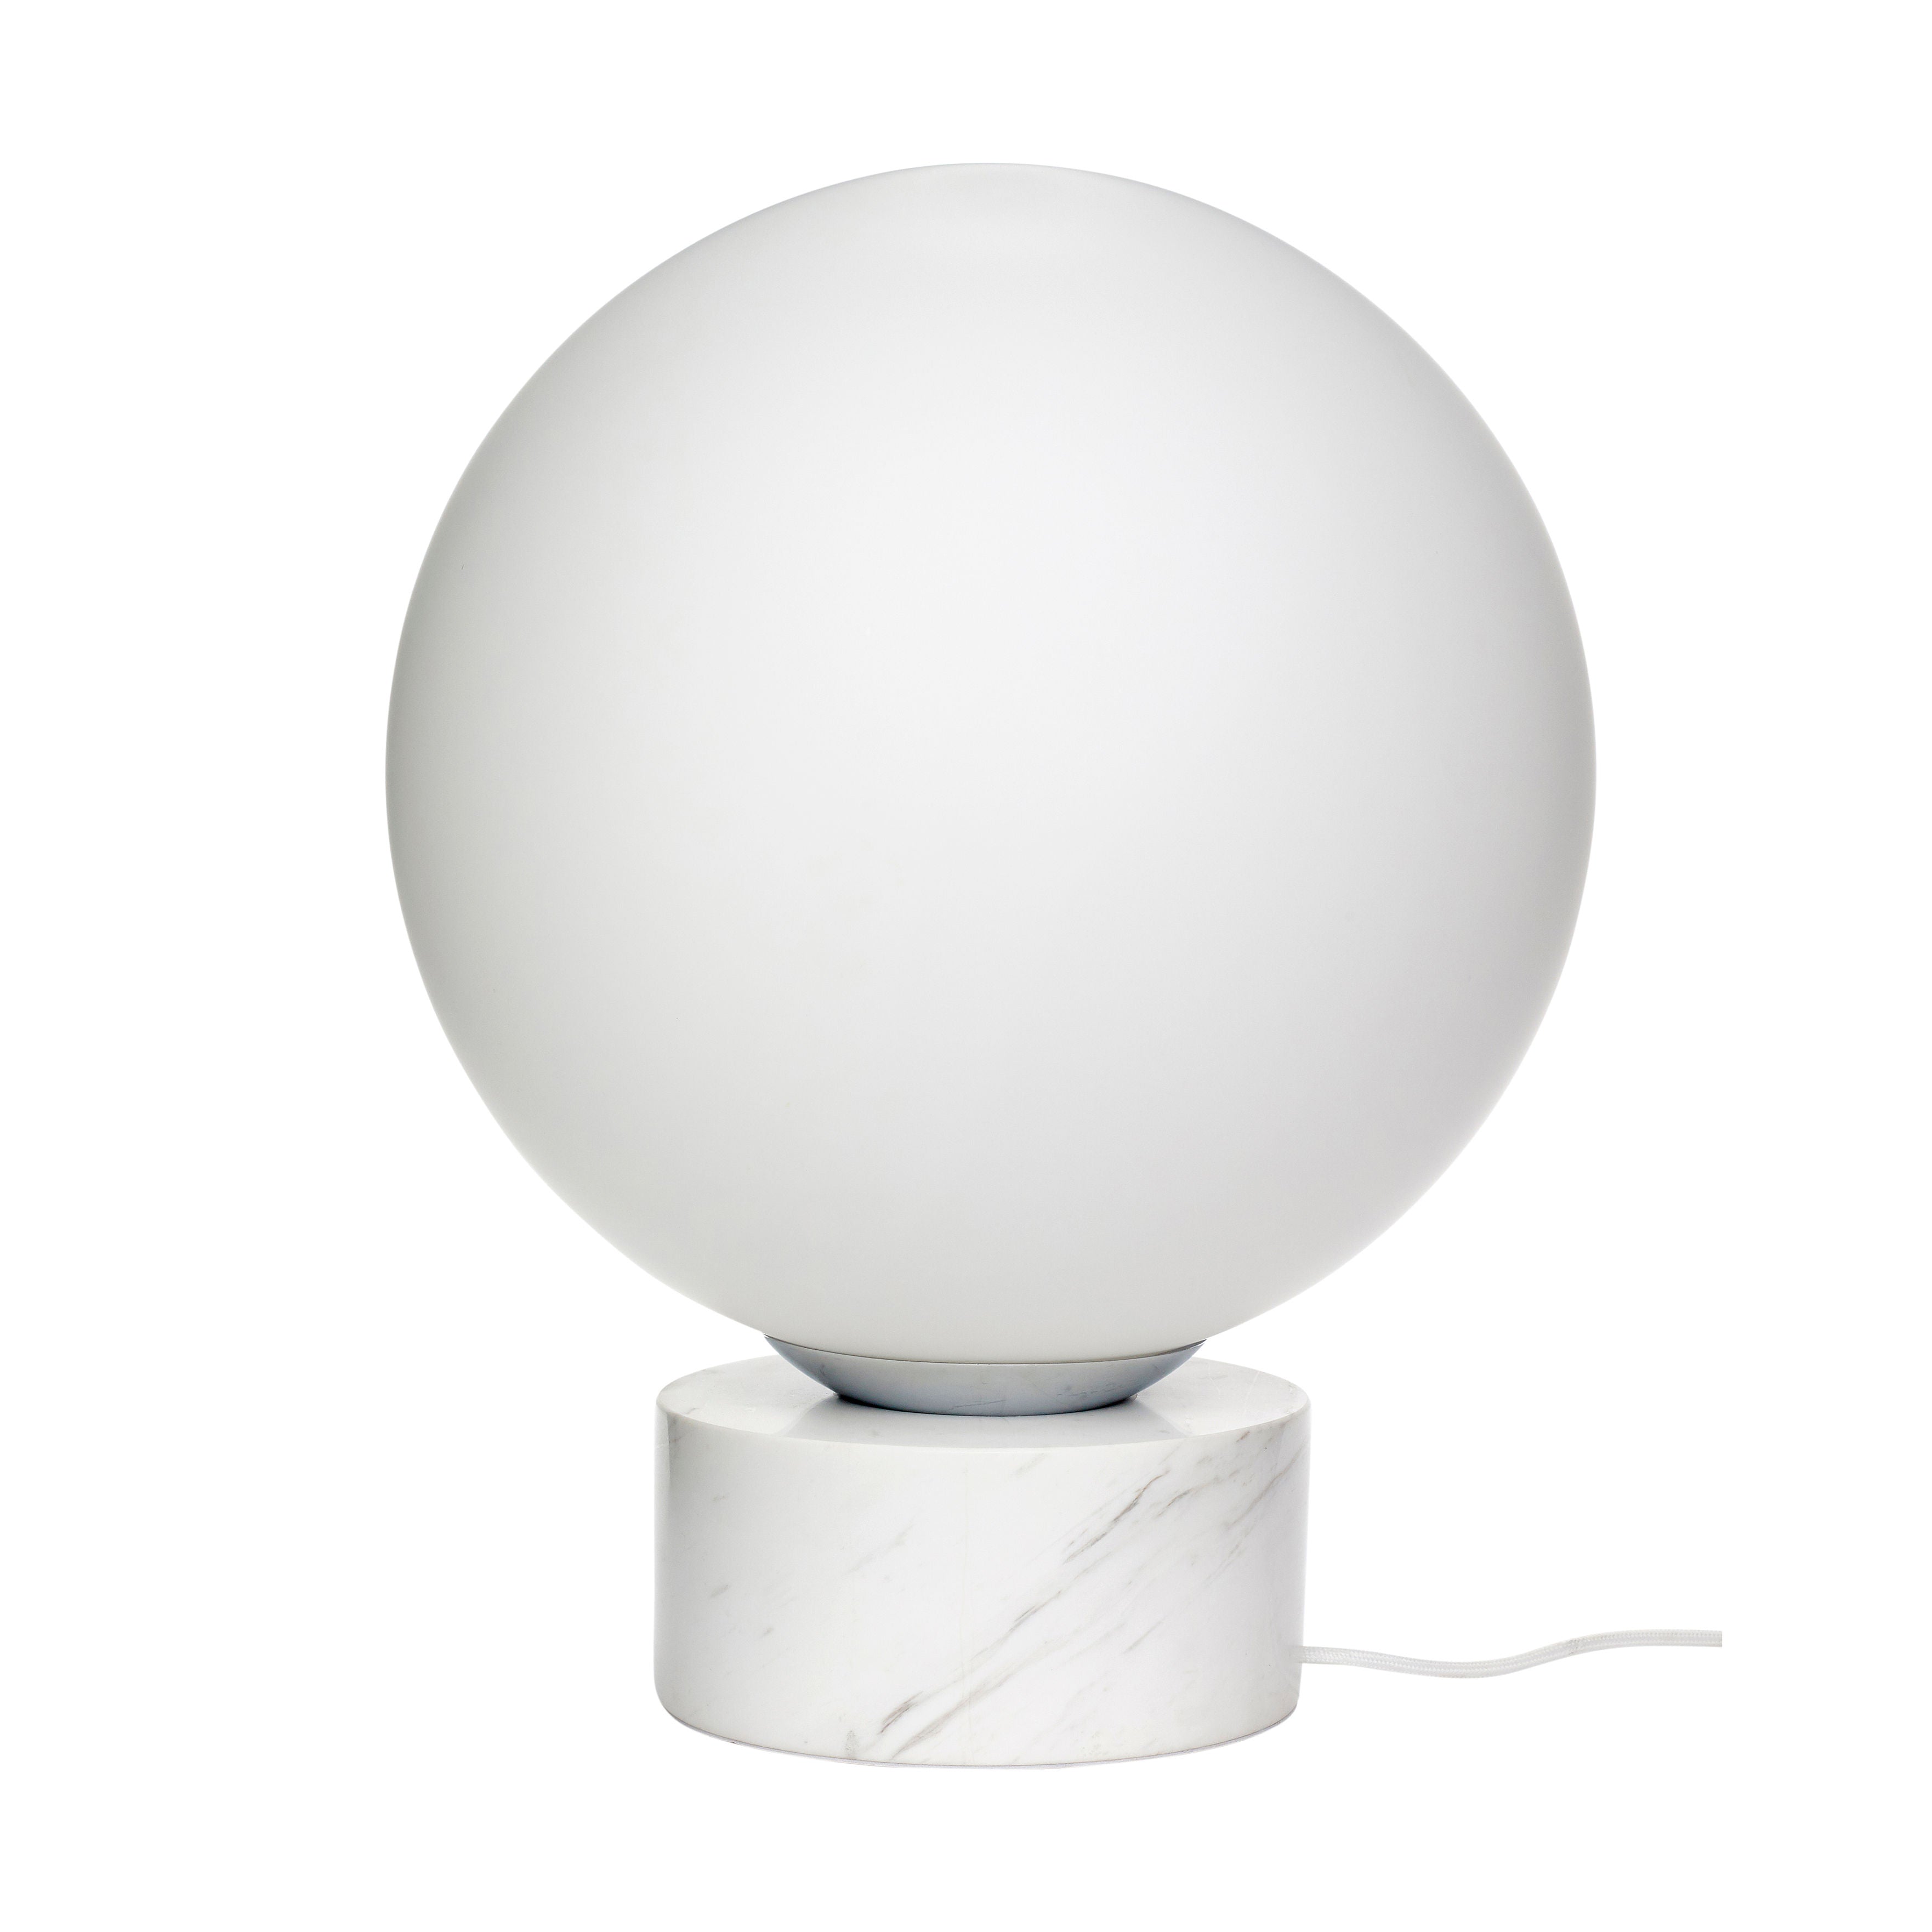 Die Stehlampe "Sphere" in Weiß vereint Marmor, Milchglas und Eisen zu einem eleganten Design, handgefertigt und mit einem zylinderförmigen Marmorfuß für eine südländische Atmosphäre, ideal für das moderne Zuhause.